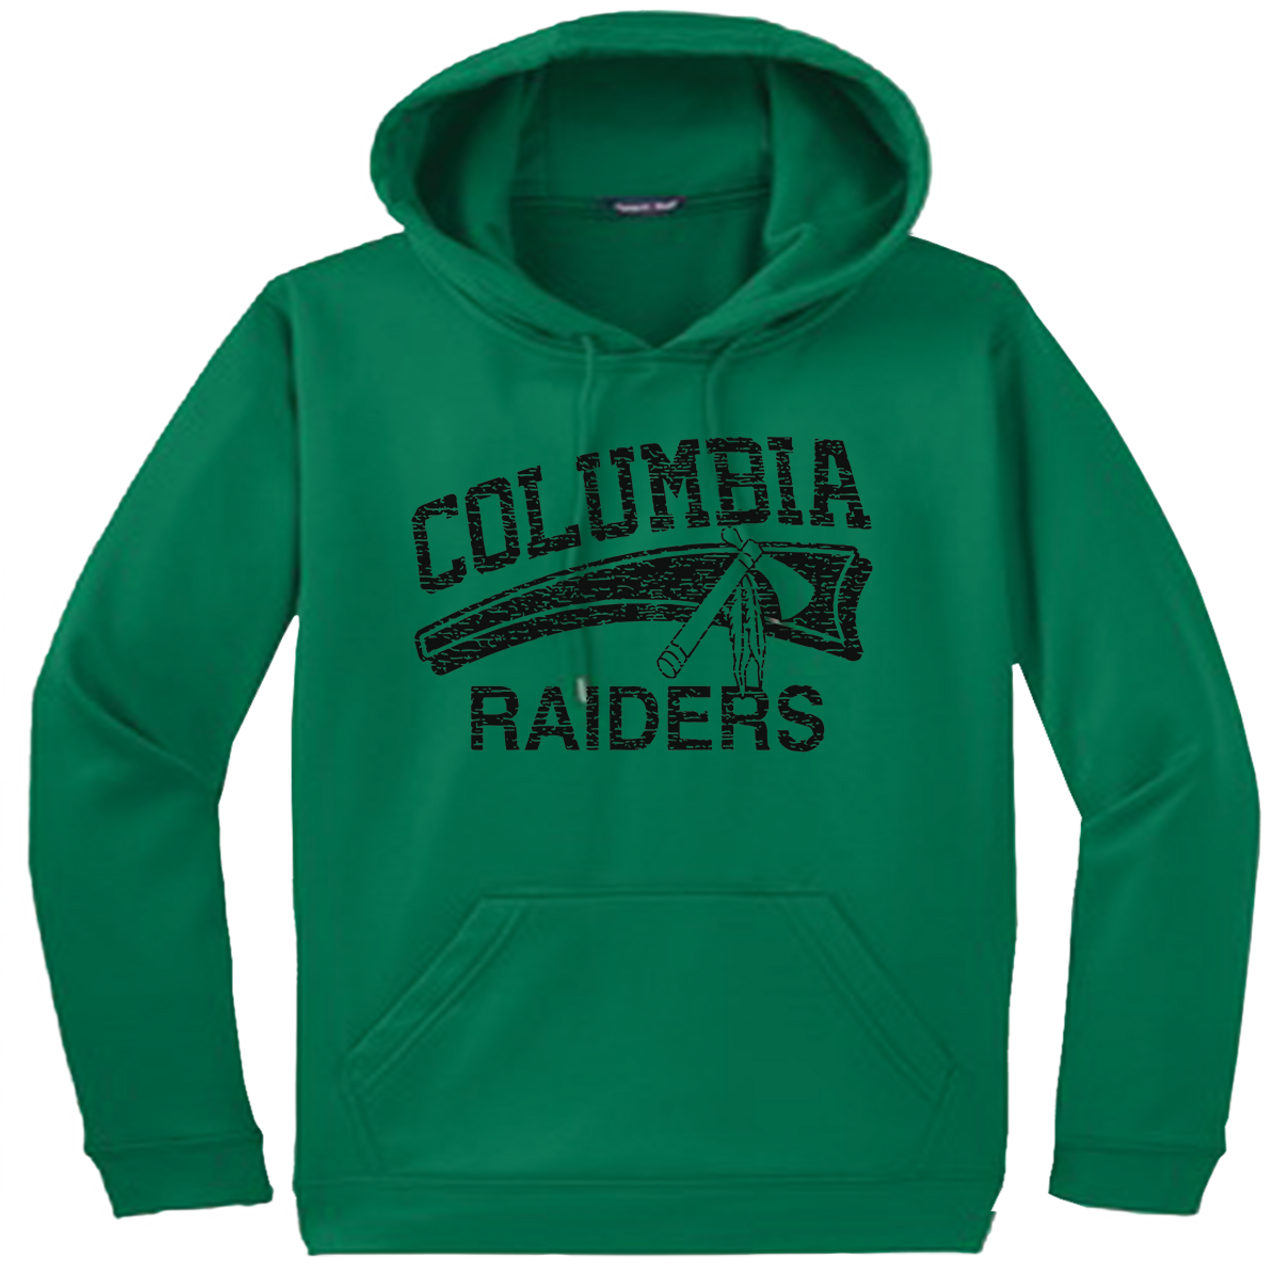 raiders performance hoodie